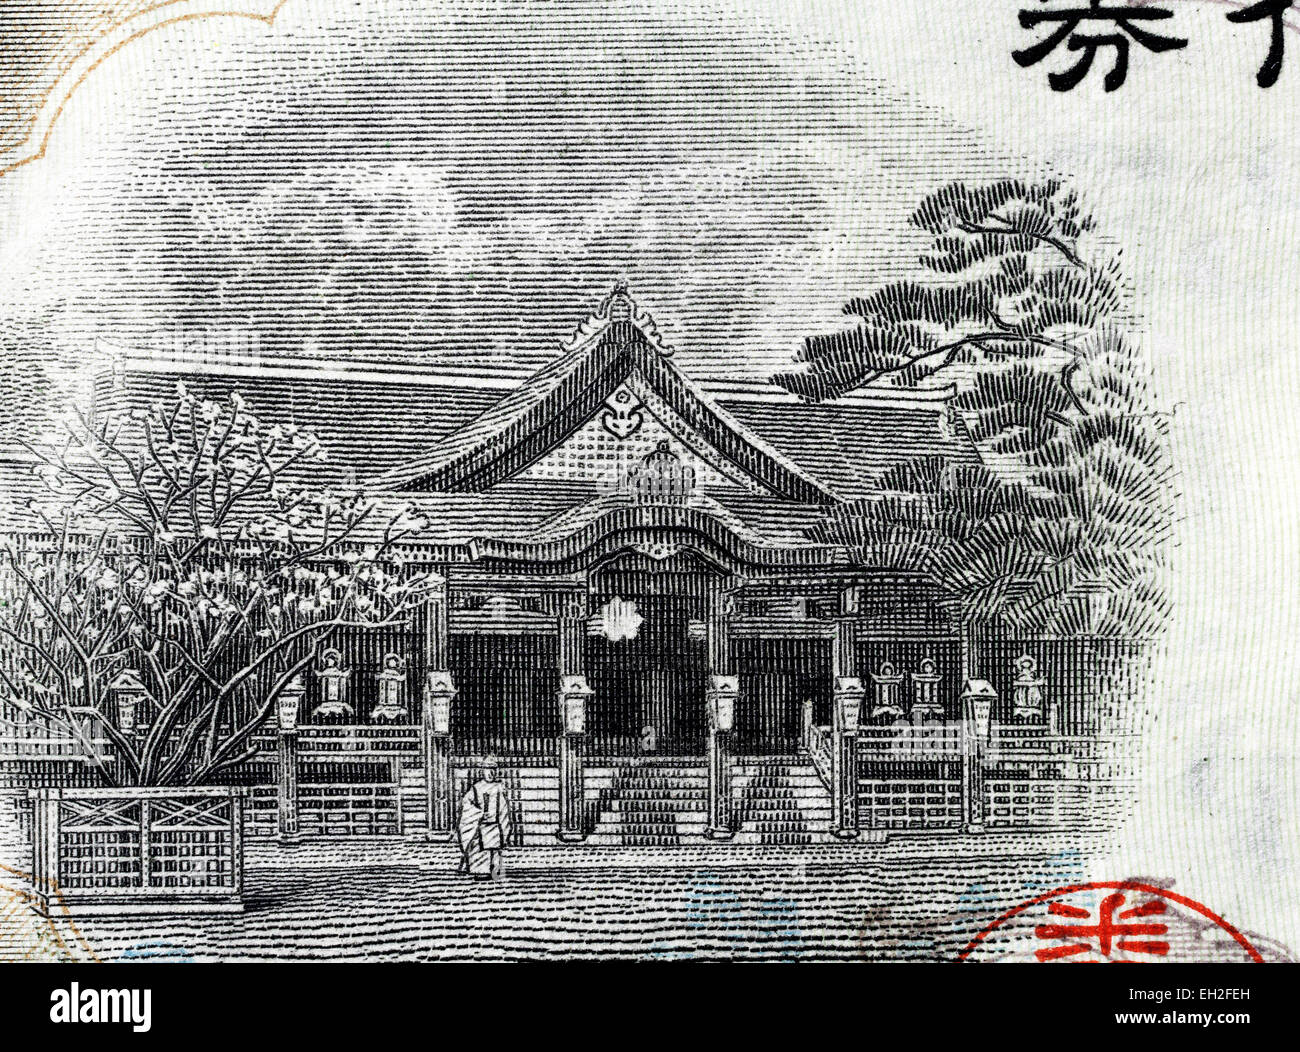 Kitano Tenman-gu Shinto shrine, Kamigyo-ku, Kyoto from 5 yen banknote, Japan, 1942 Stock Photo